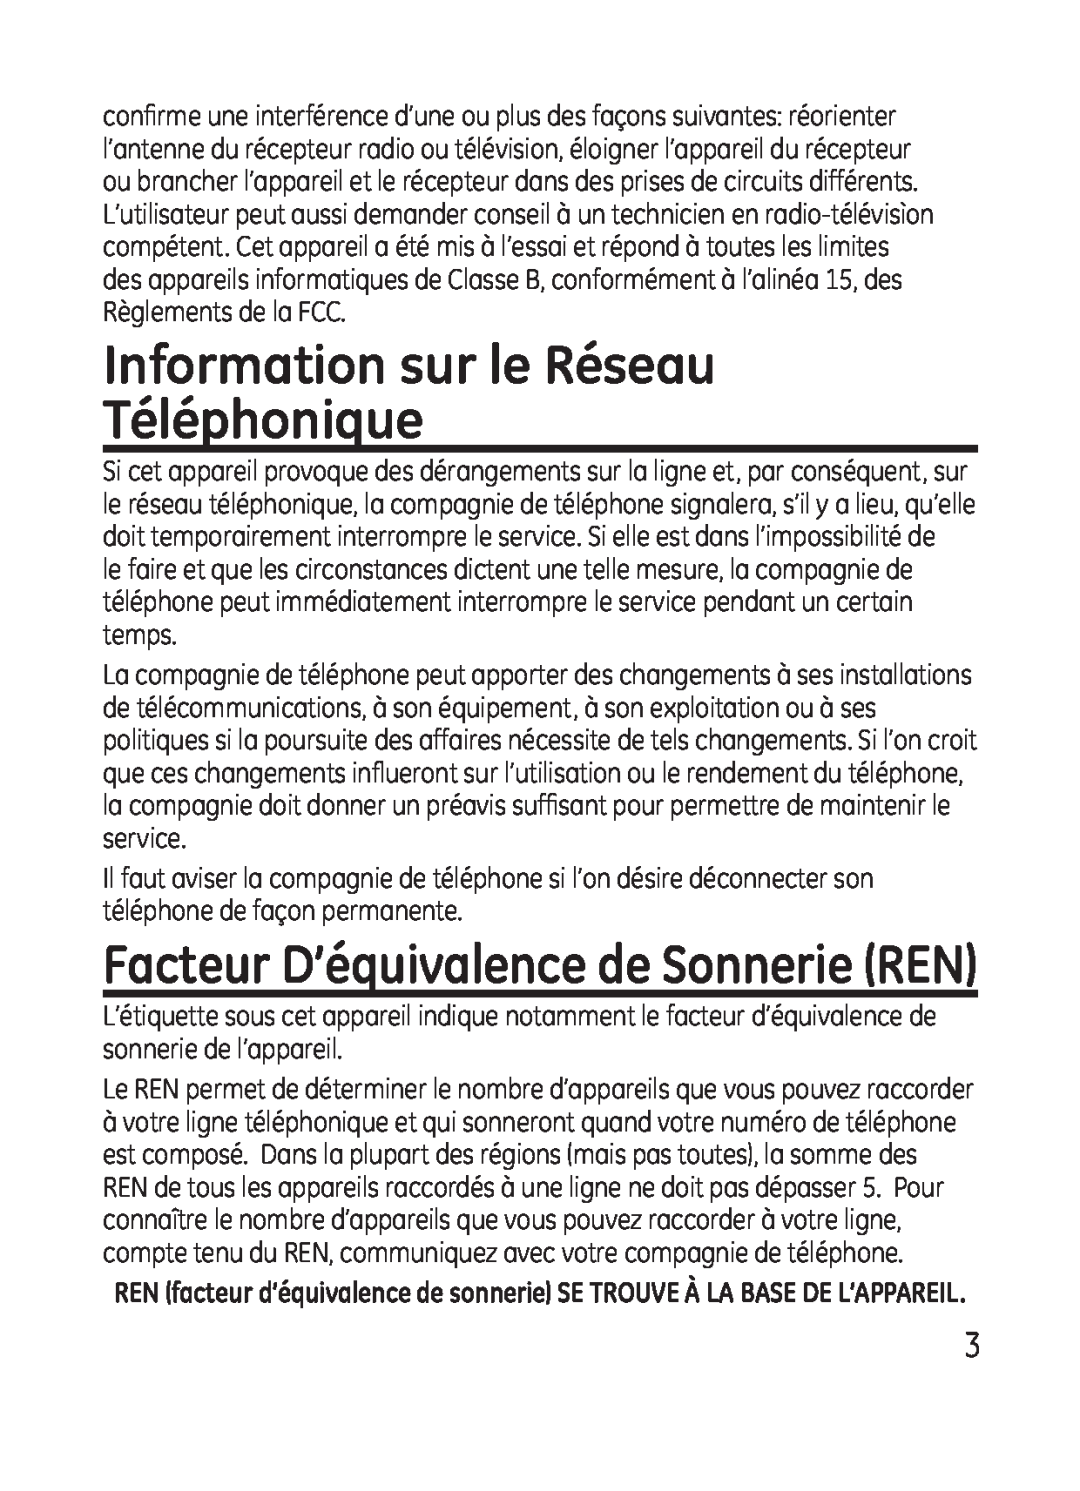 GE 28301 manual Information sur le Réseau Téléphonique, Facteur D’équivalence de Sonnerie REN 